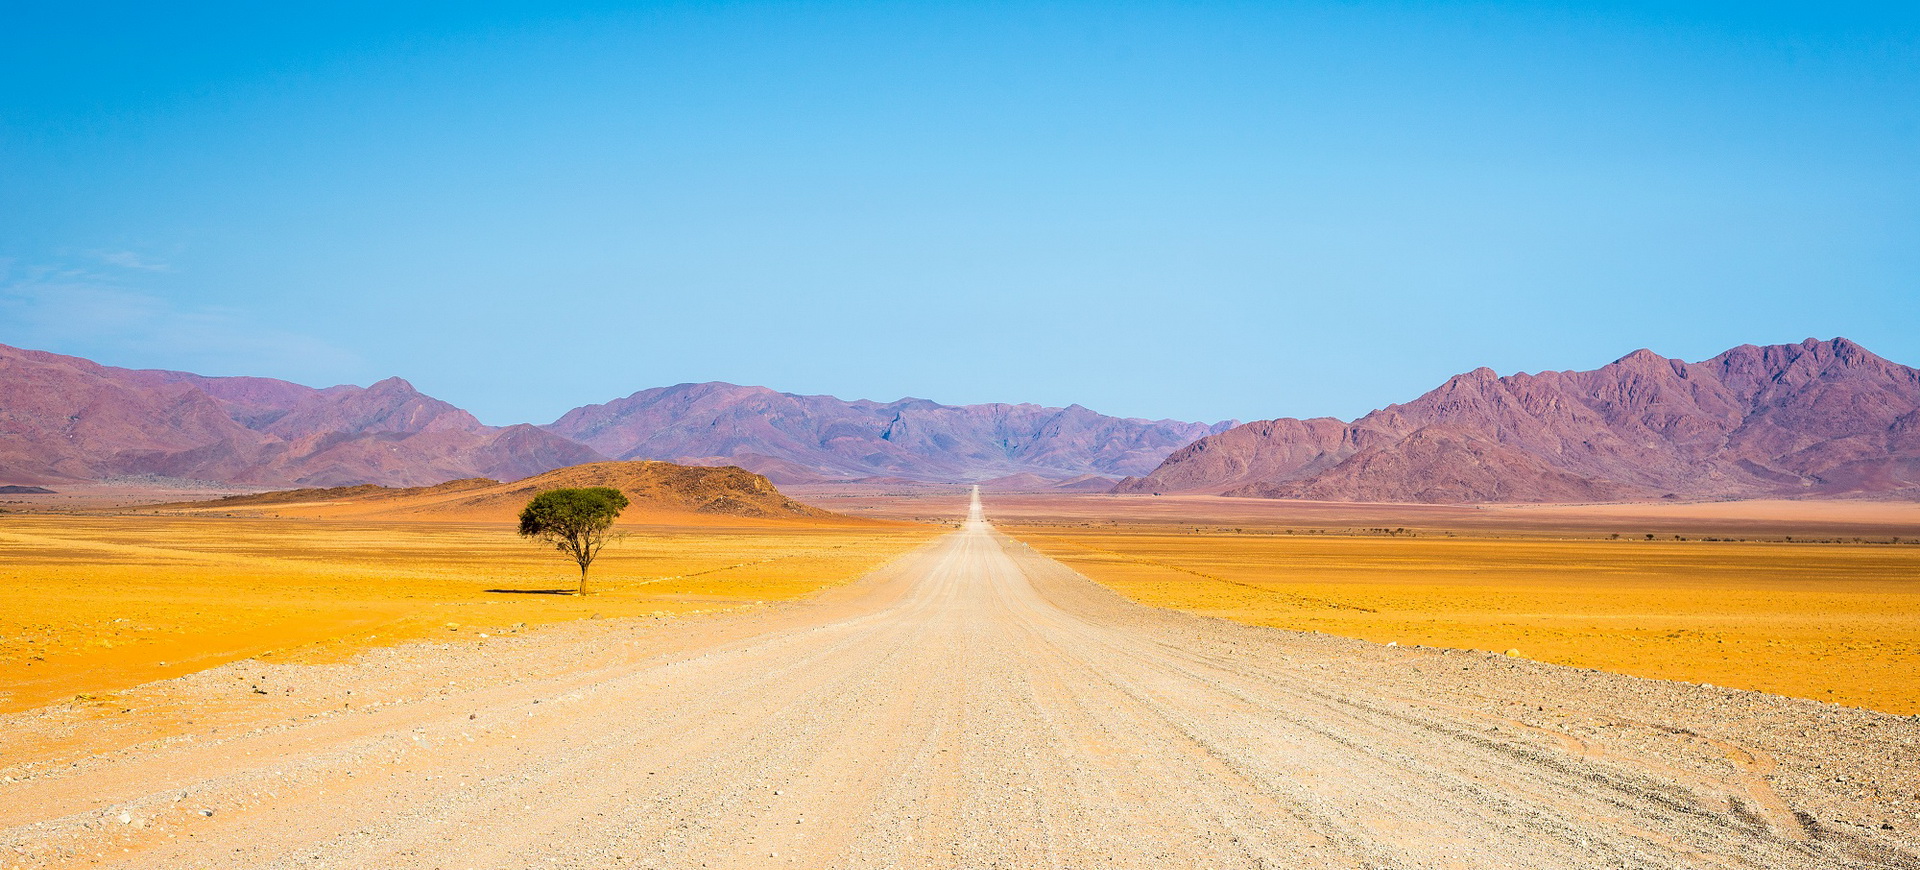 Formalités visa pour un voyage de tourisme en groupe en Namibie